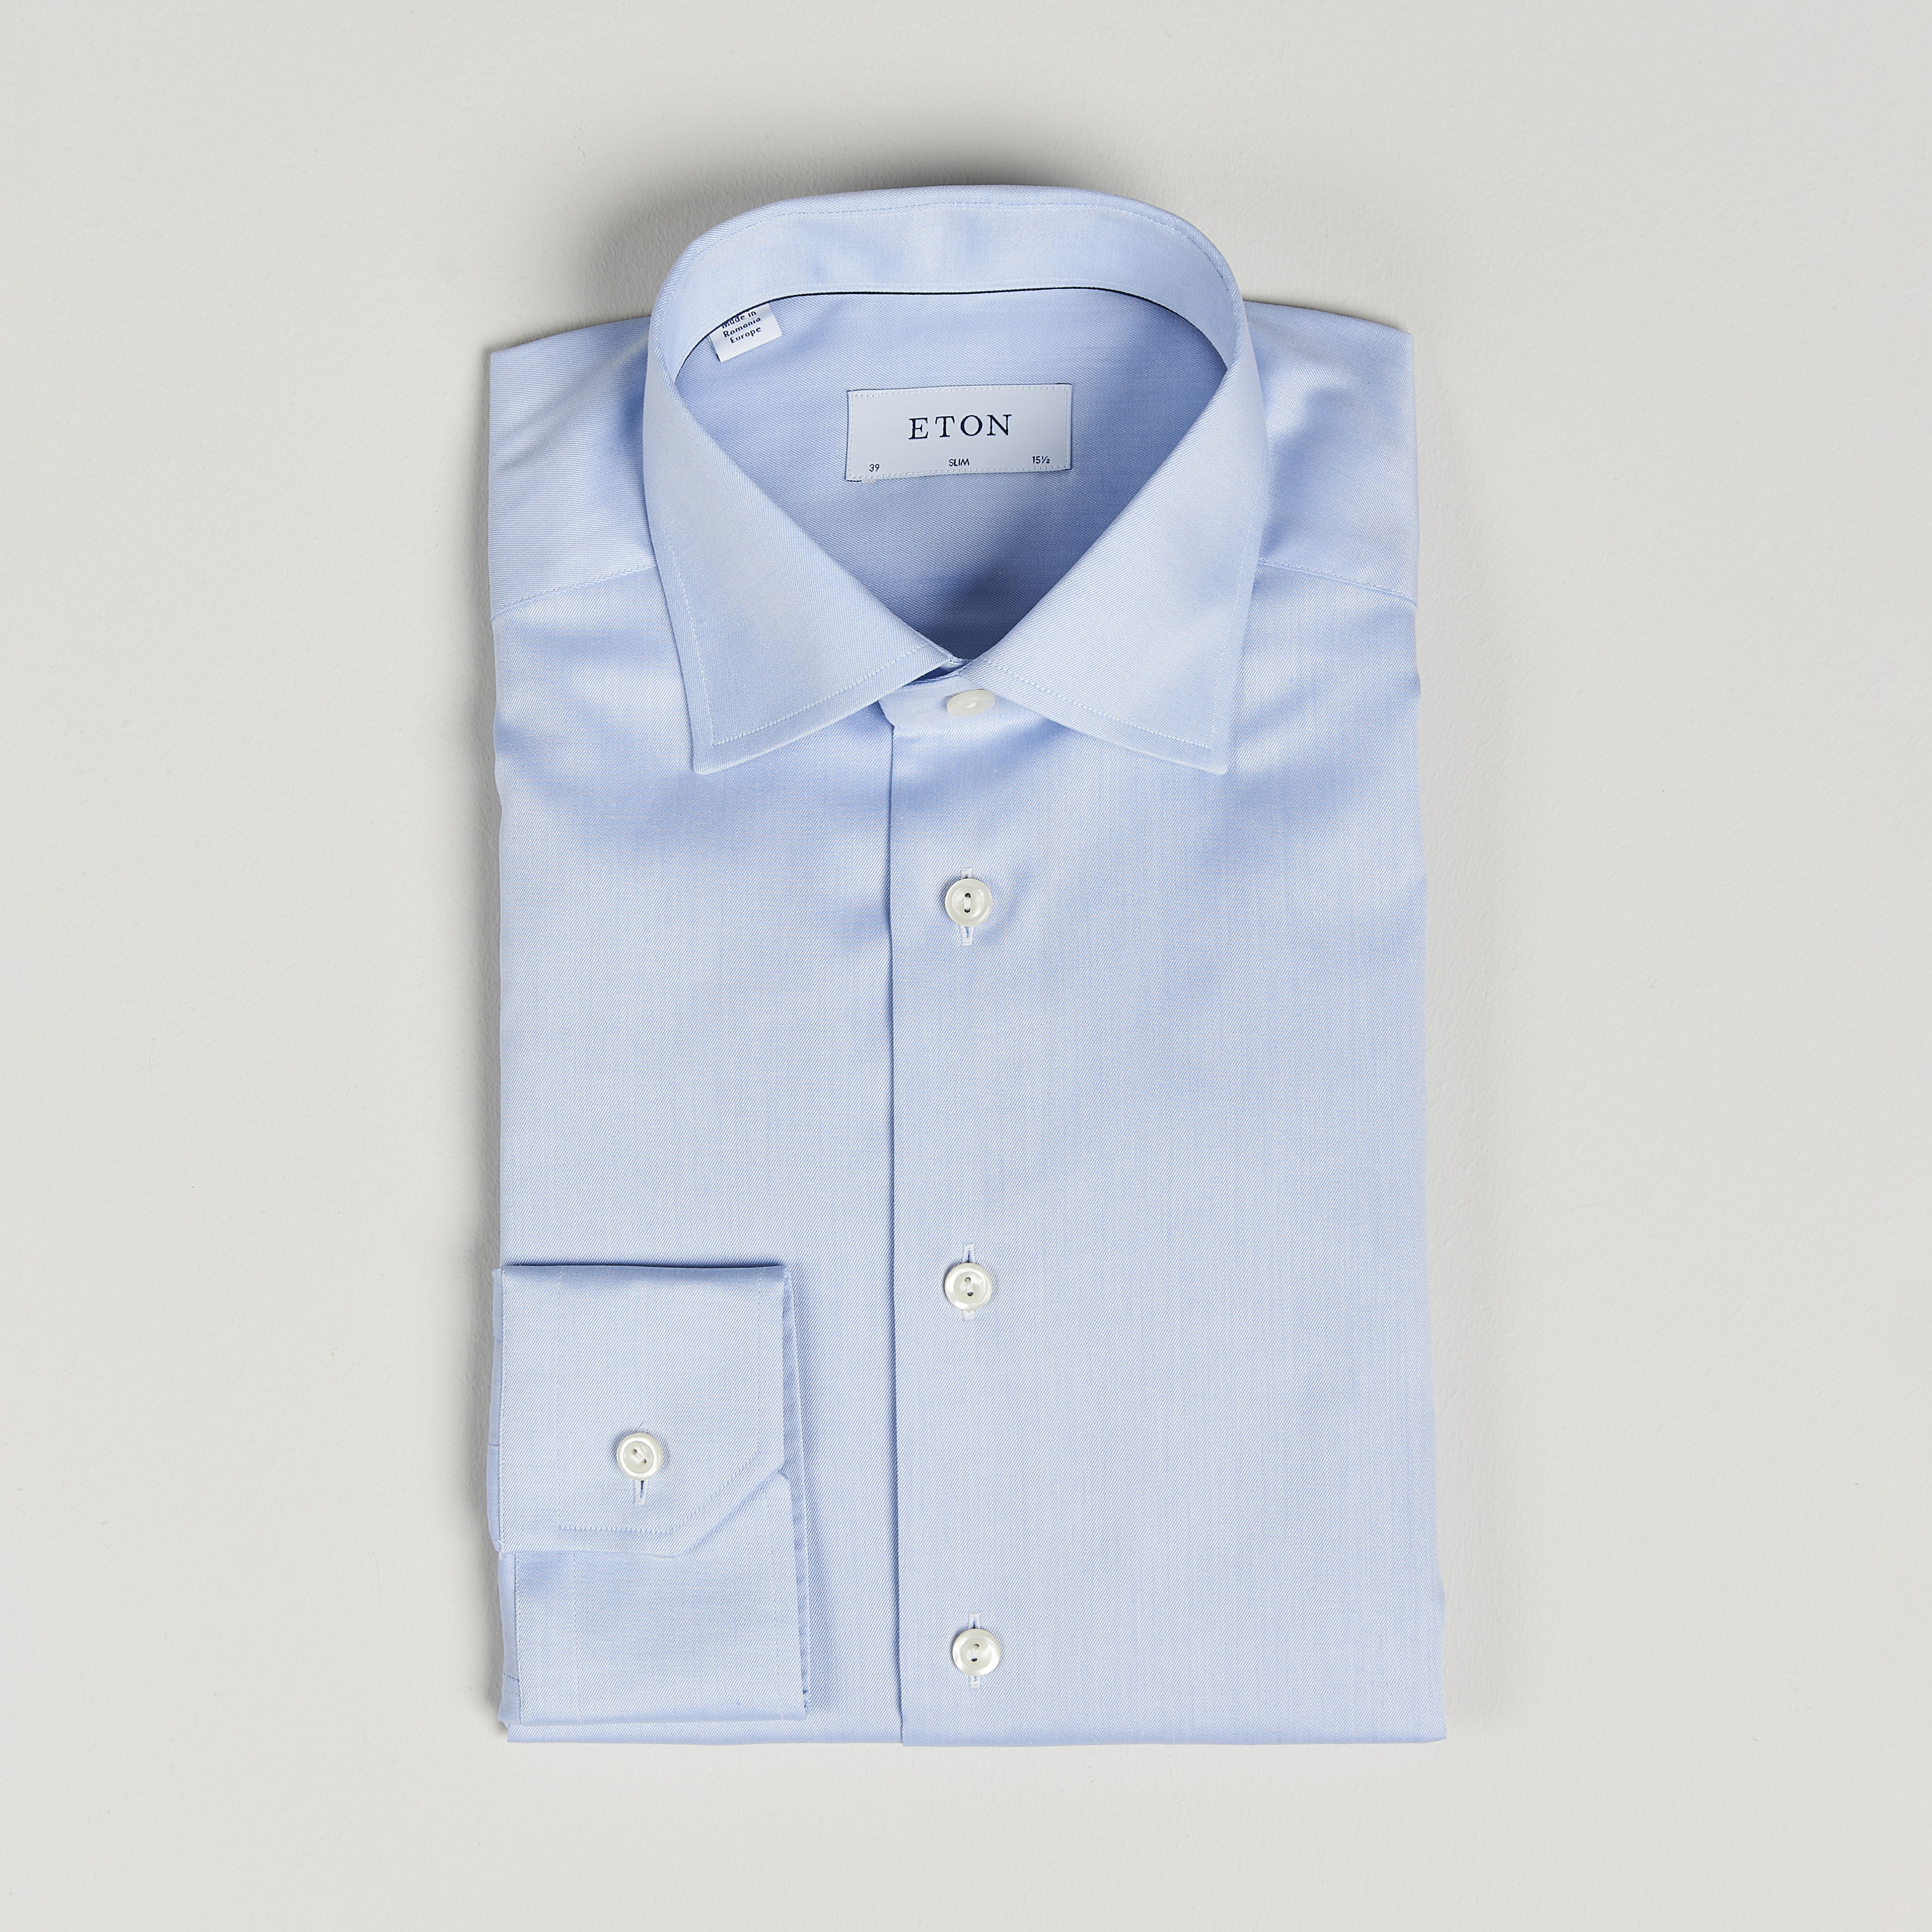 Eton Slim Fit Shirt Blue at CareOfCarl.com